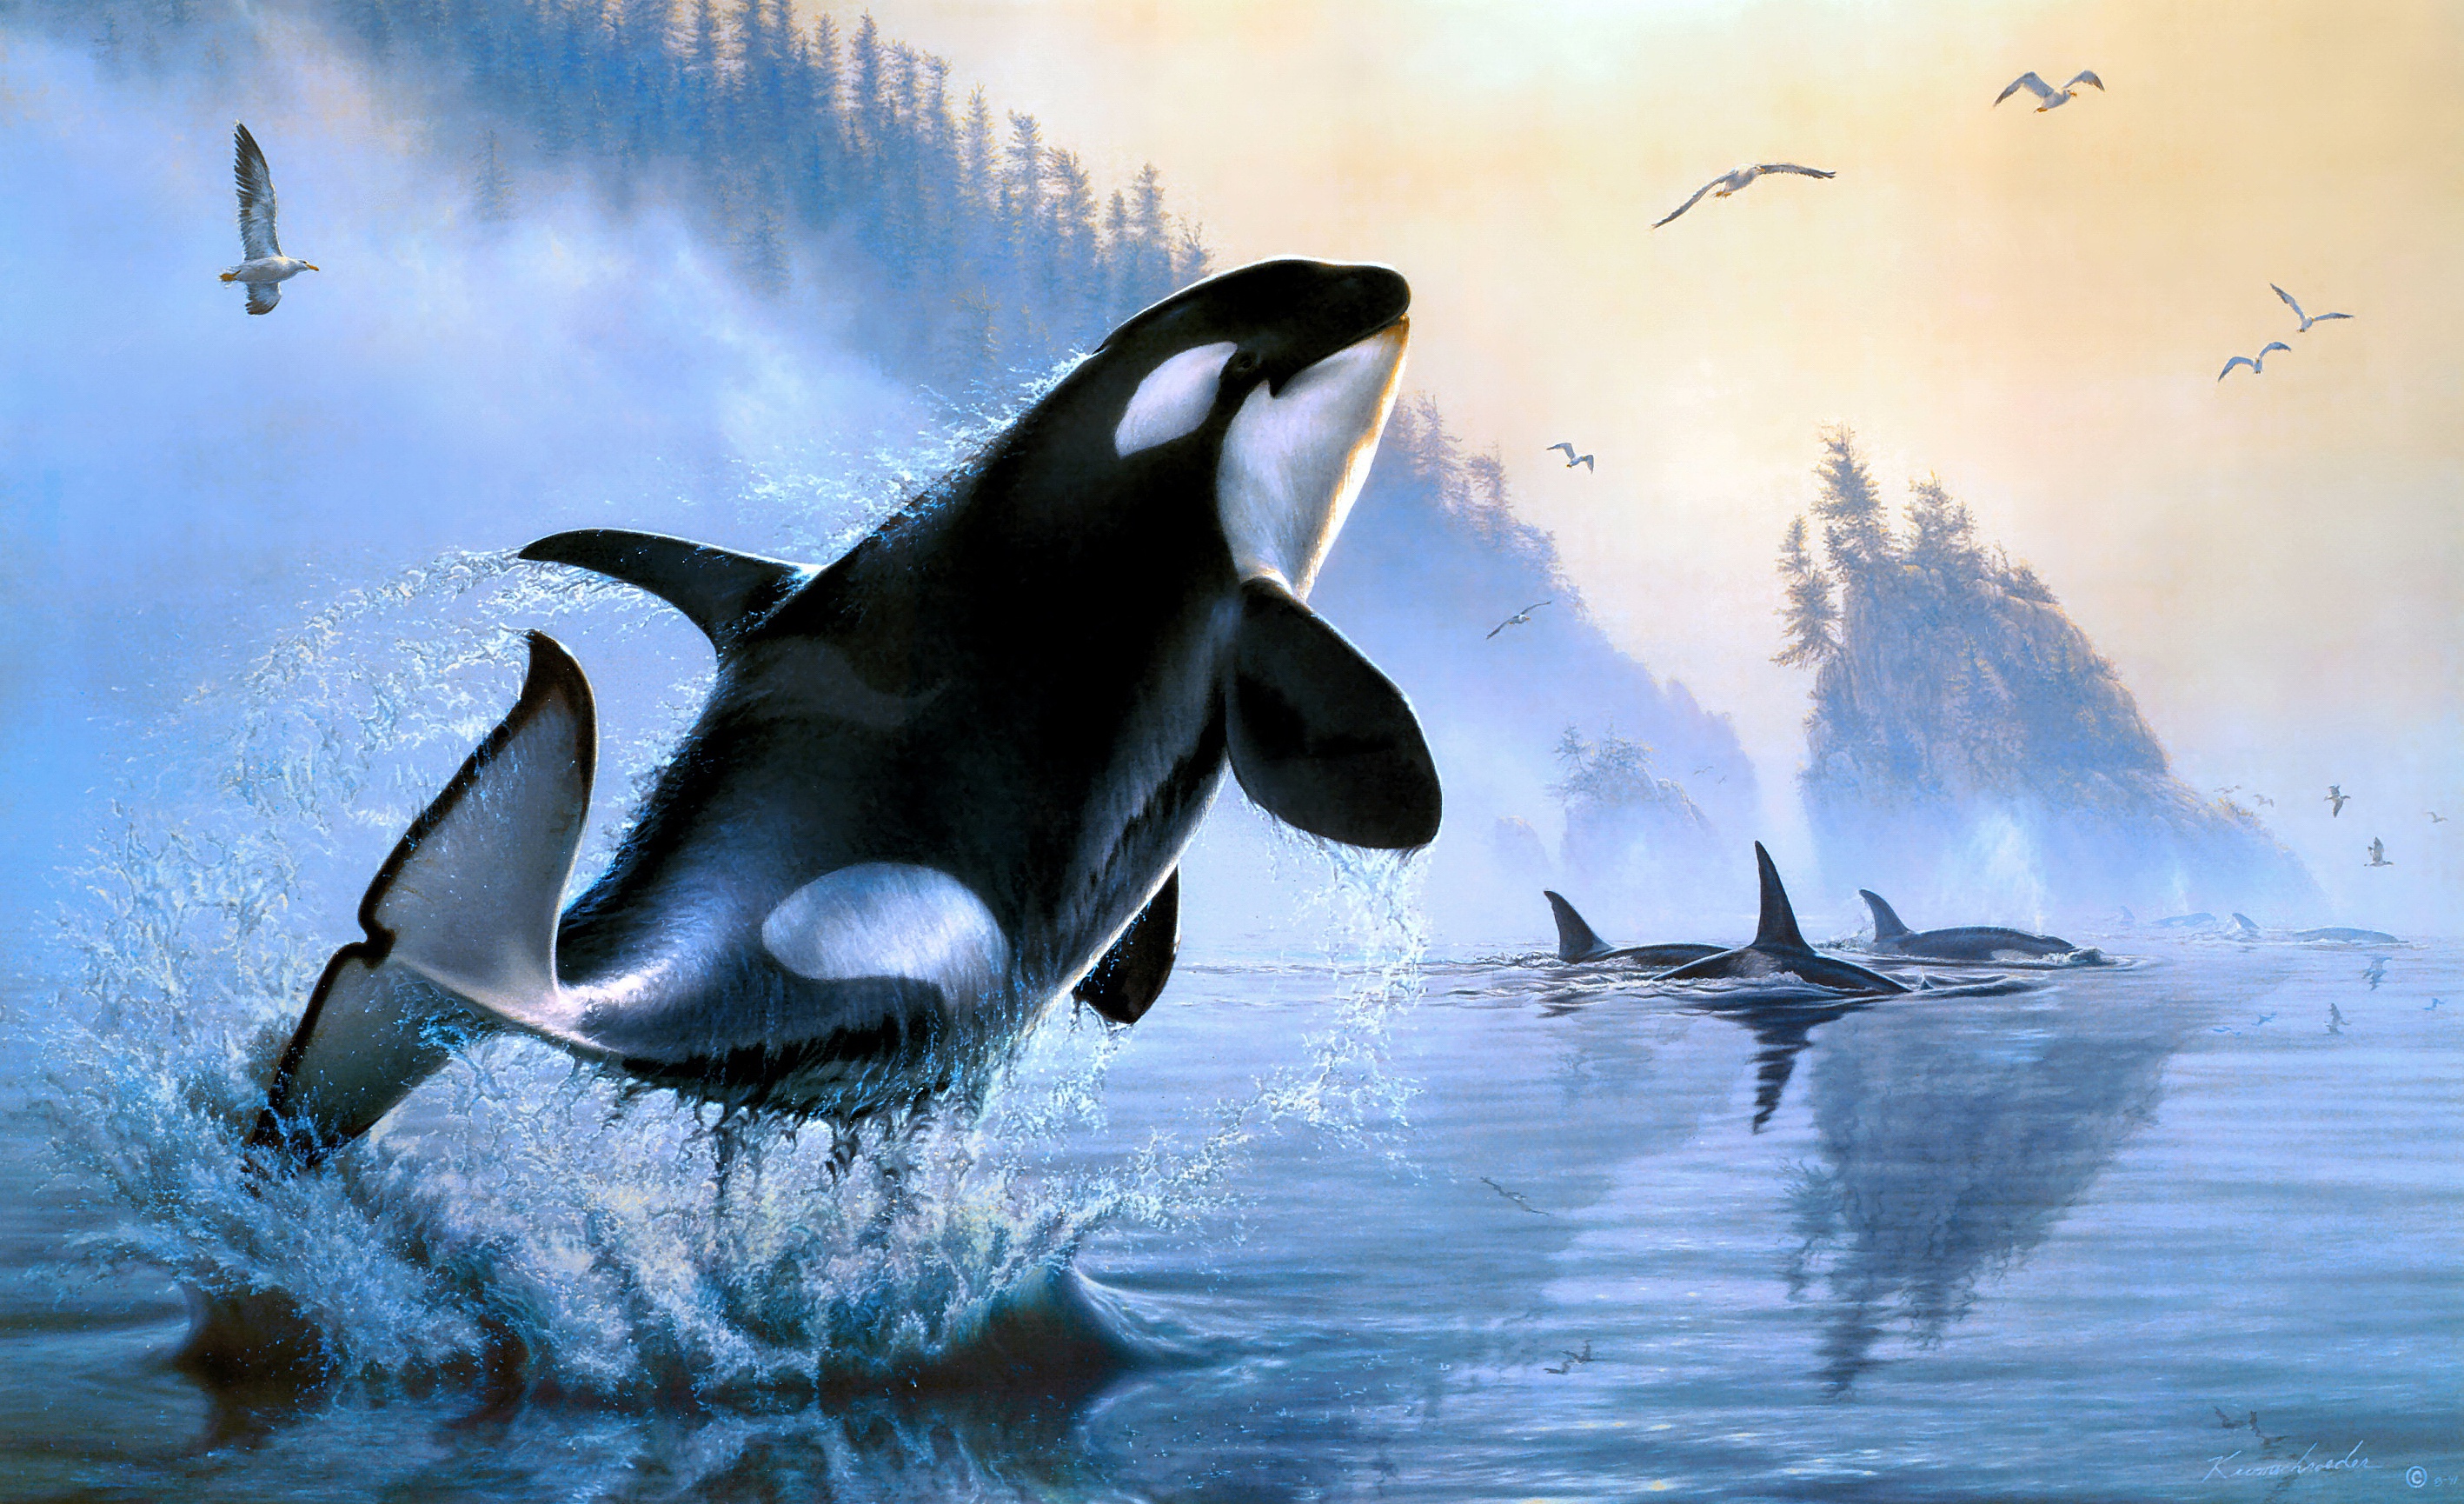 Orca HD Wallpaper by Lee Kromschroeder